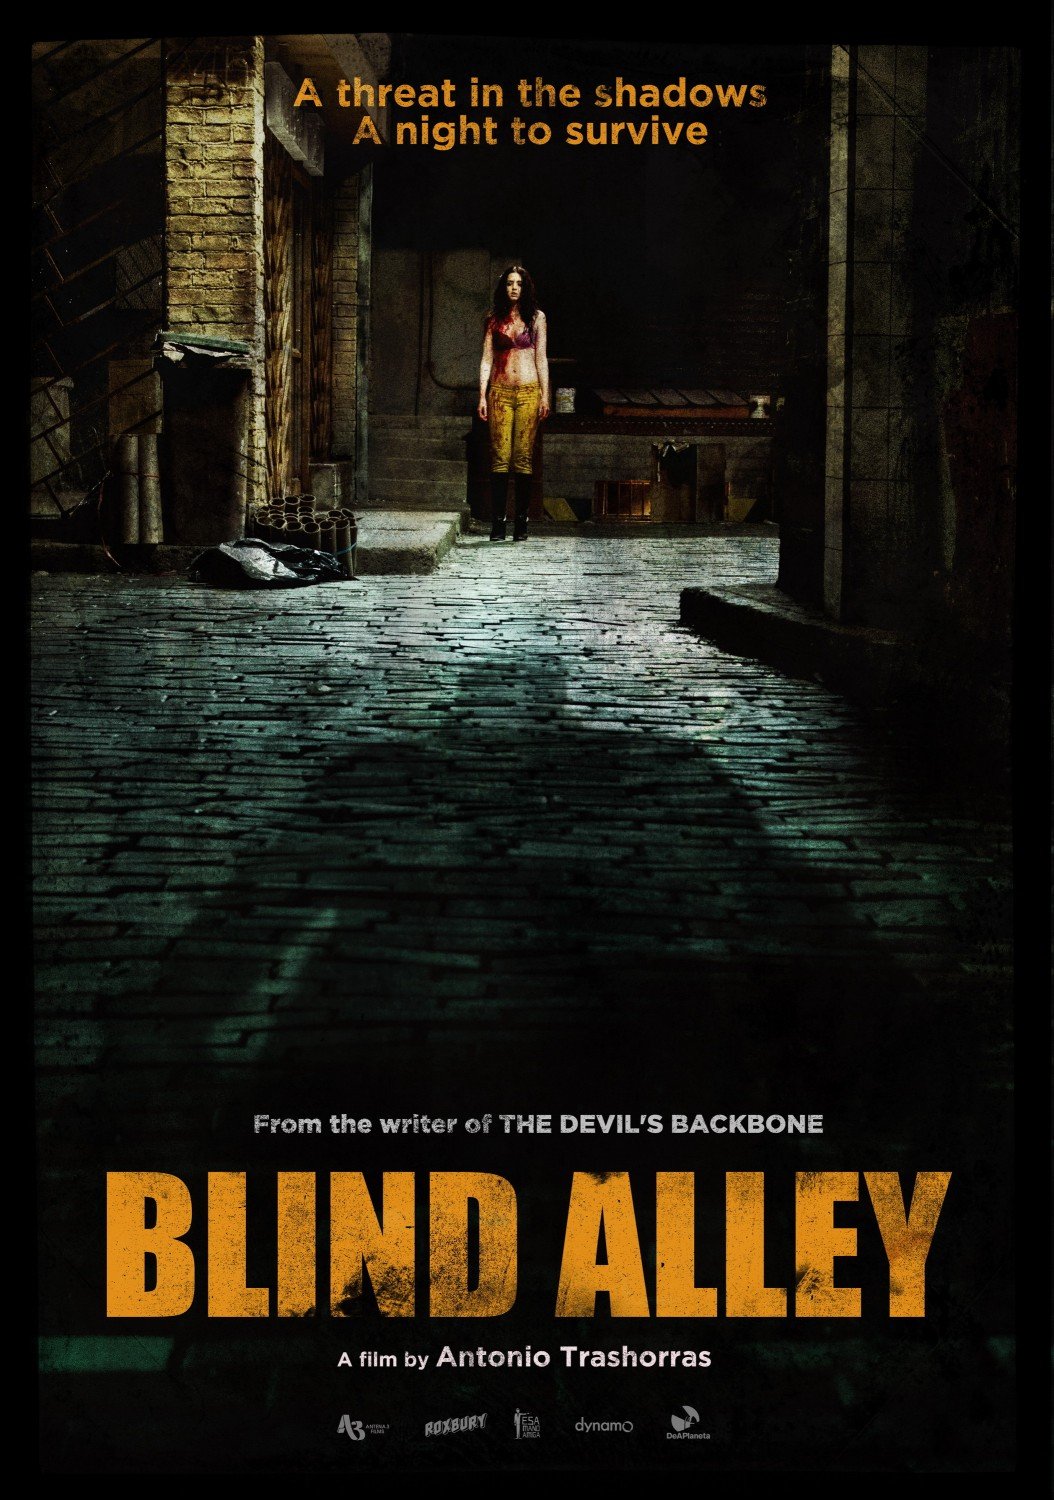 L'affiche du film Blind Alley